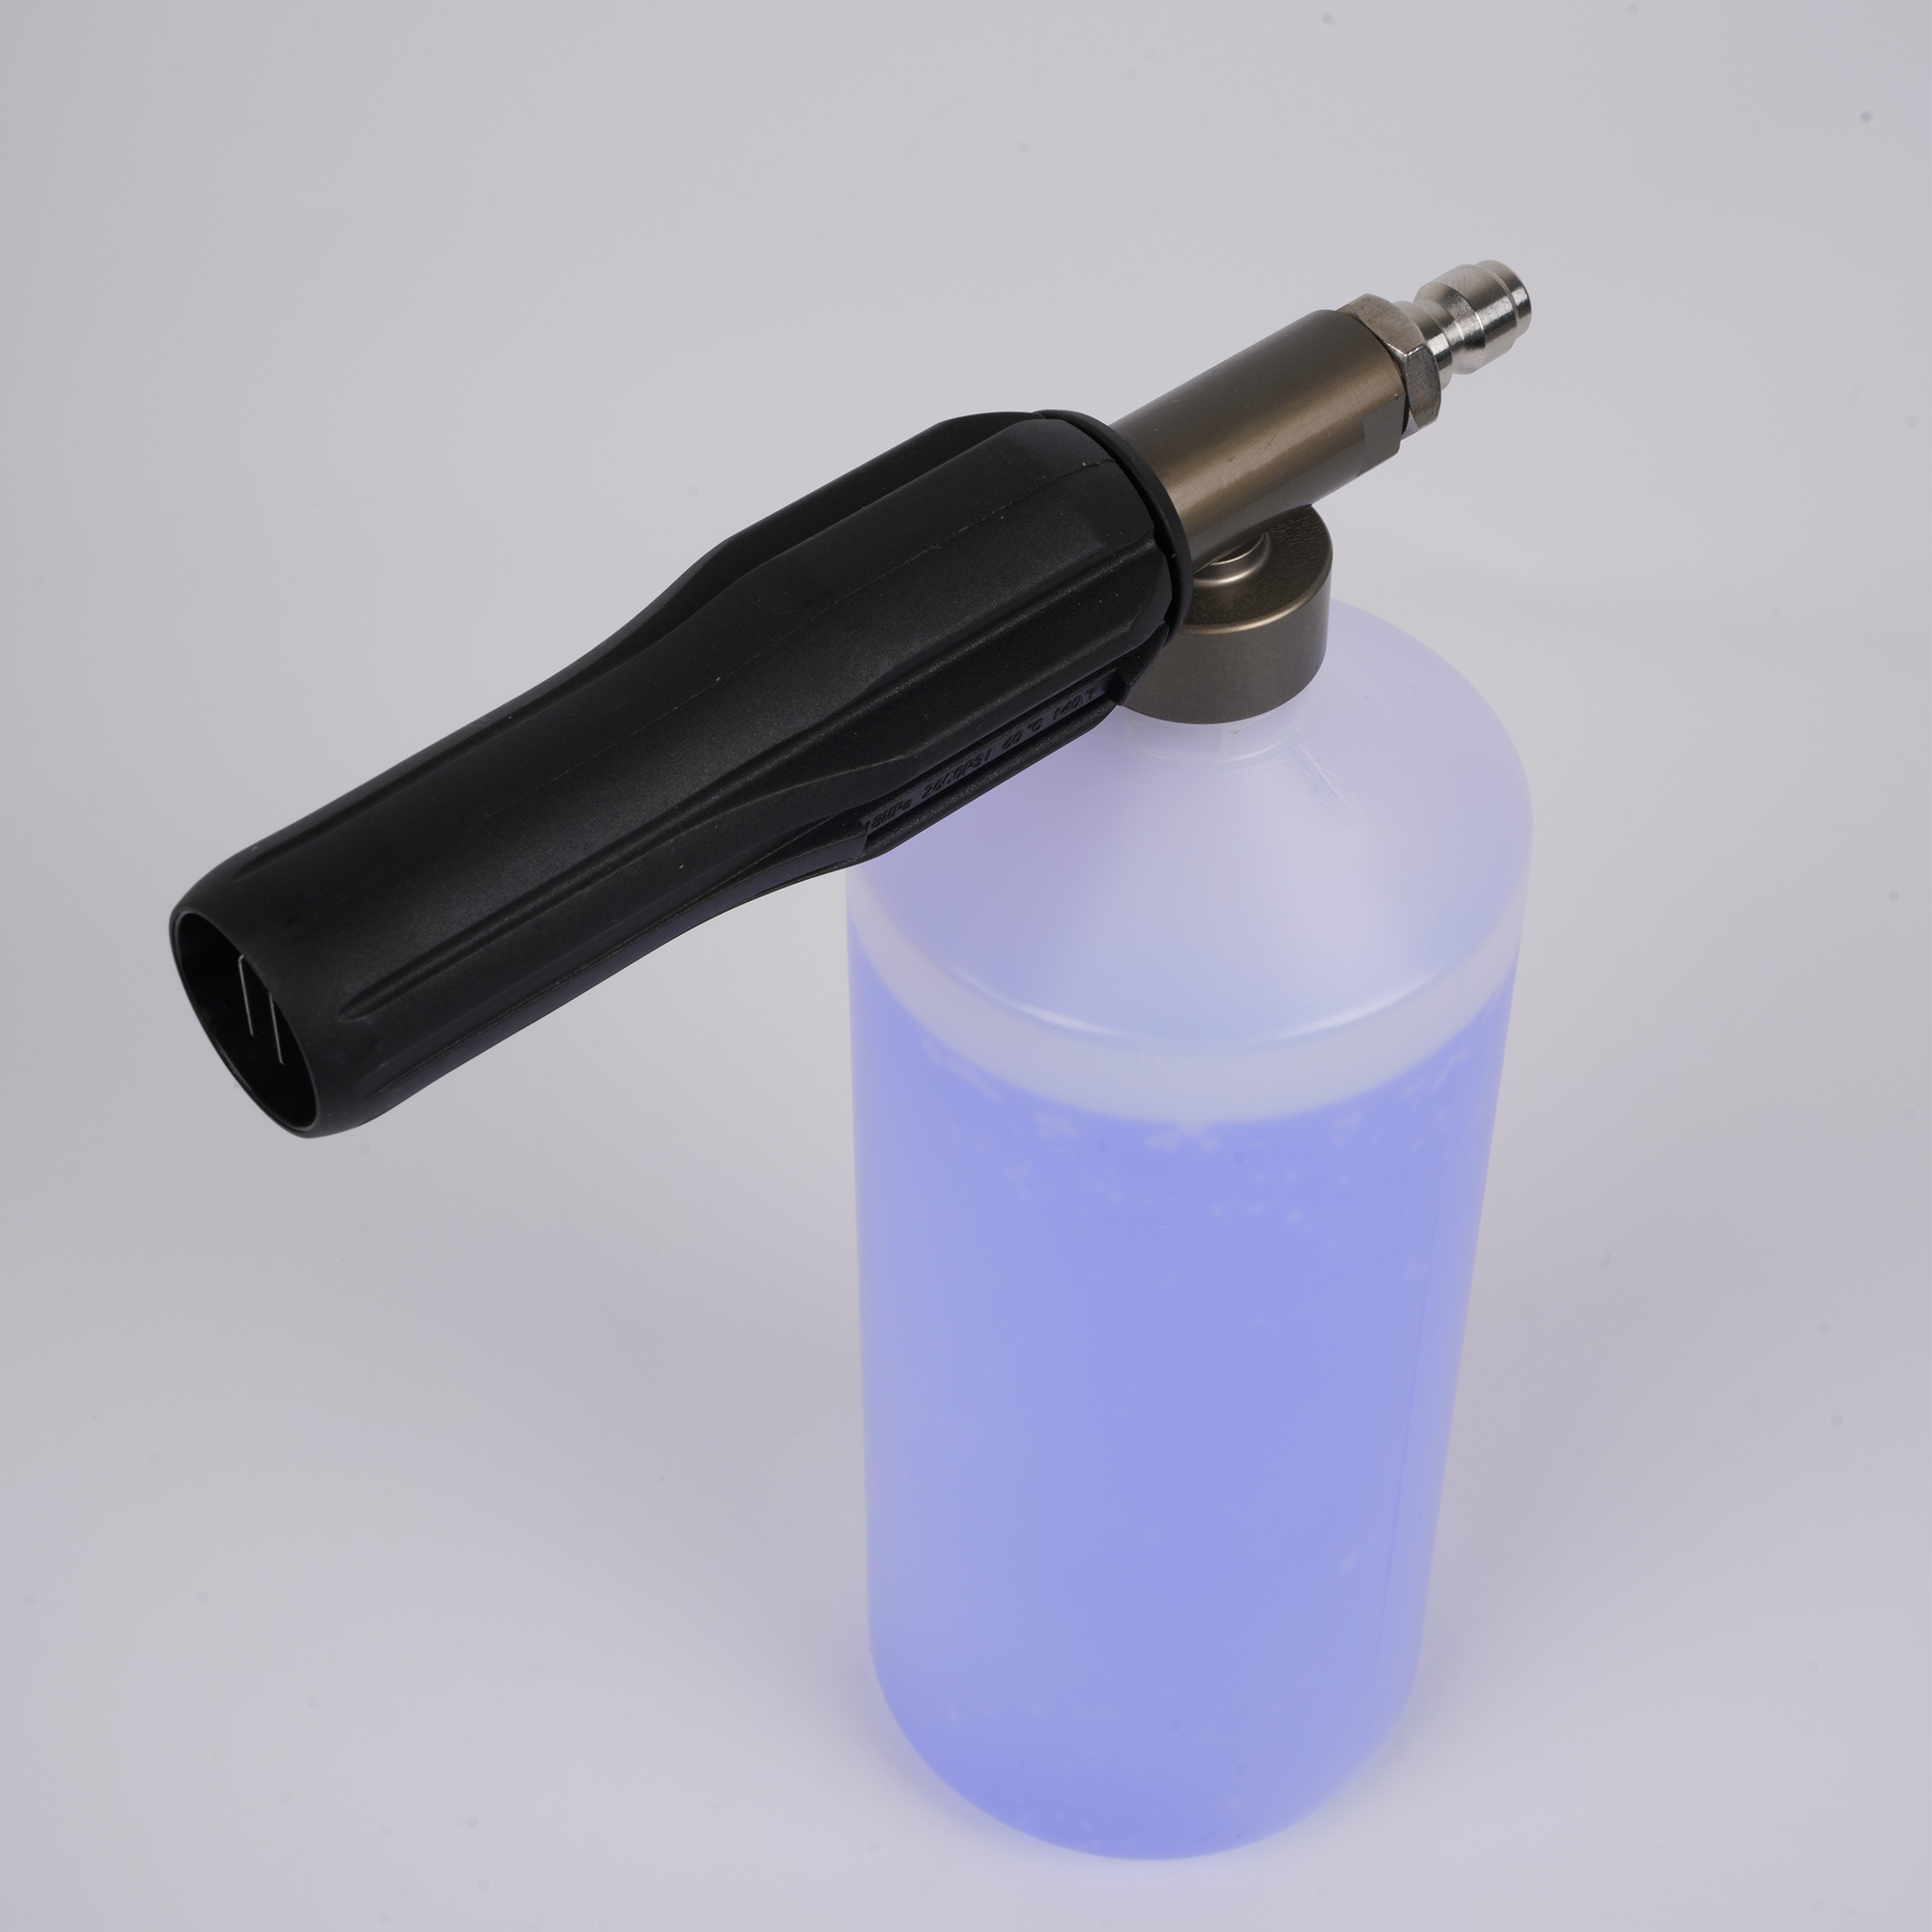 Canhão de espuma ajustável de 1 litro de garrafa de neve lança com conector rápido de 1/4 "para pistola de arruela de pressão